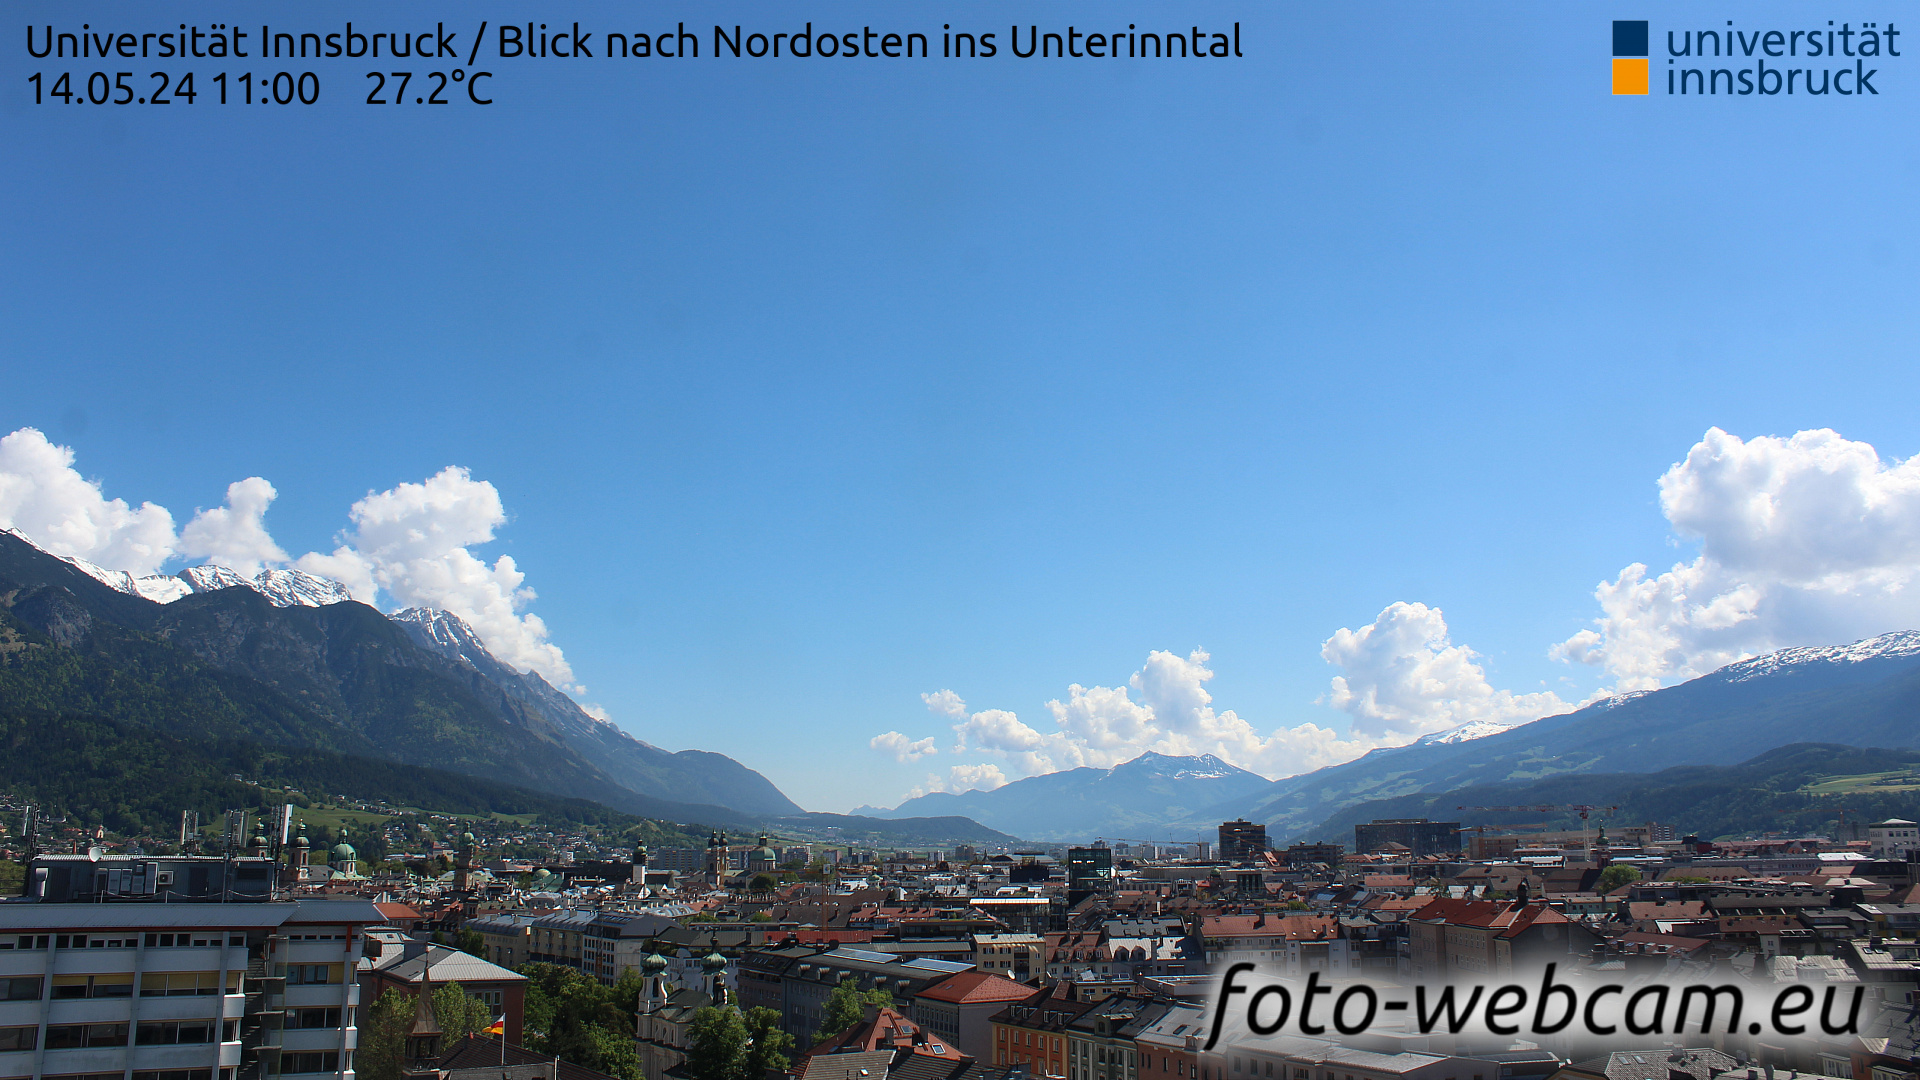 Innsbruck Thu. 11:06